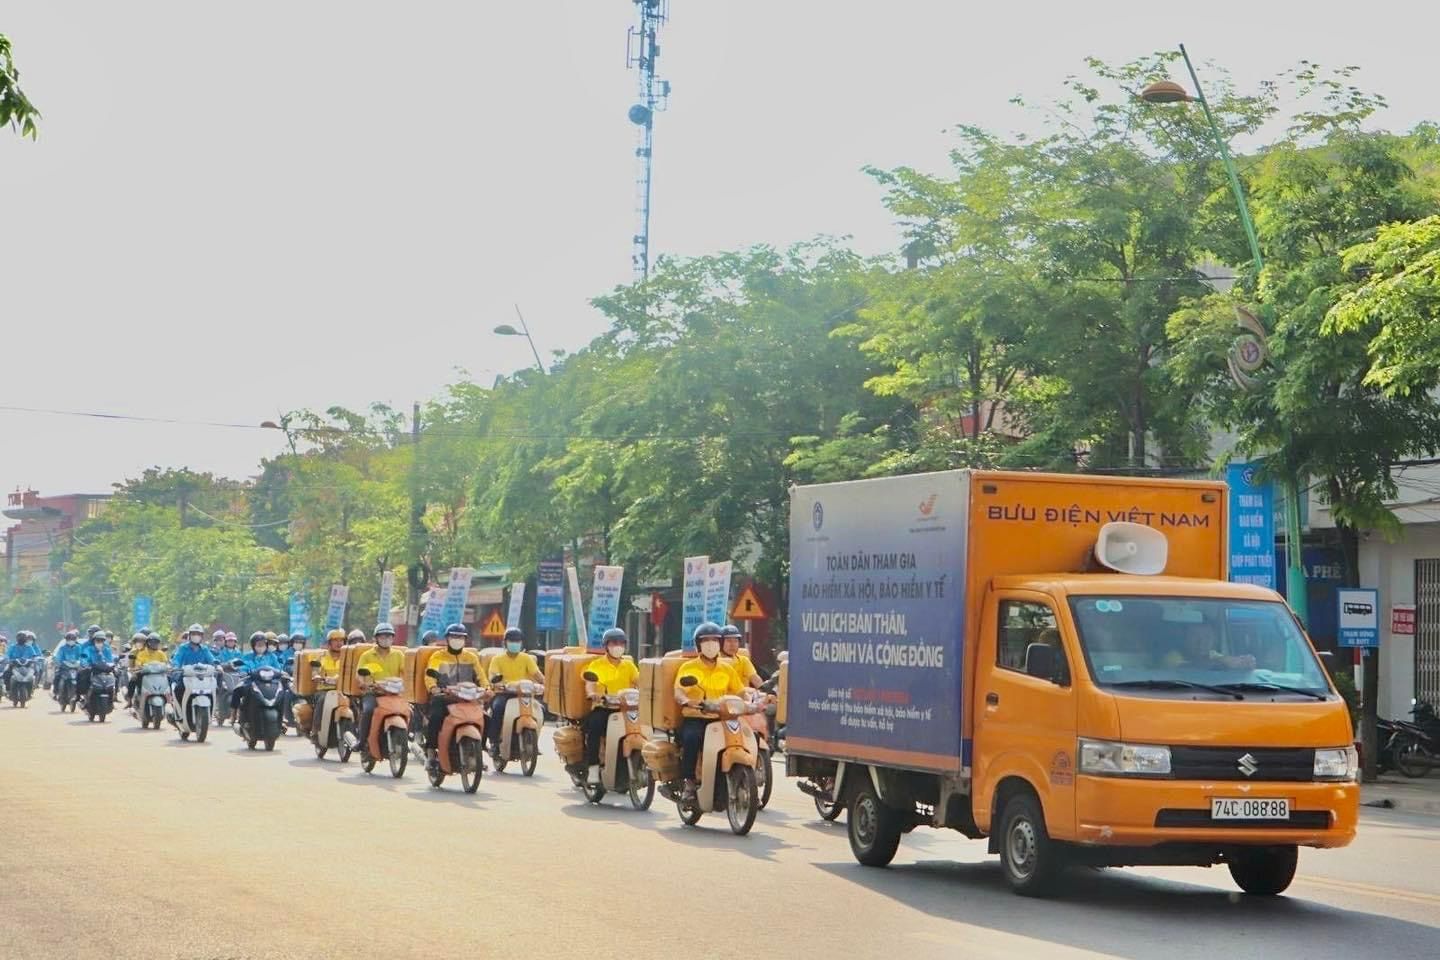 Bưu điện Việt Nam ra quân phát triển người tham gia BHXH, BHYT